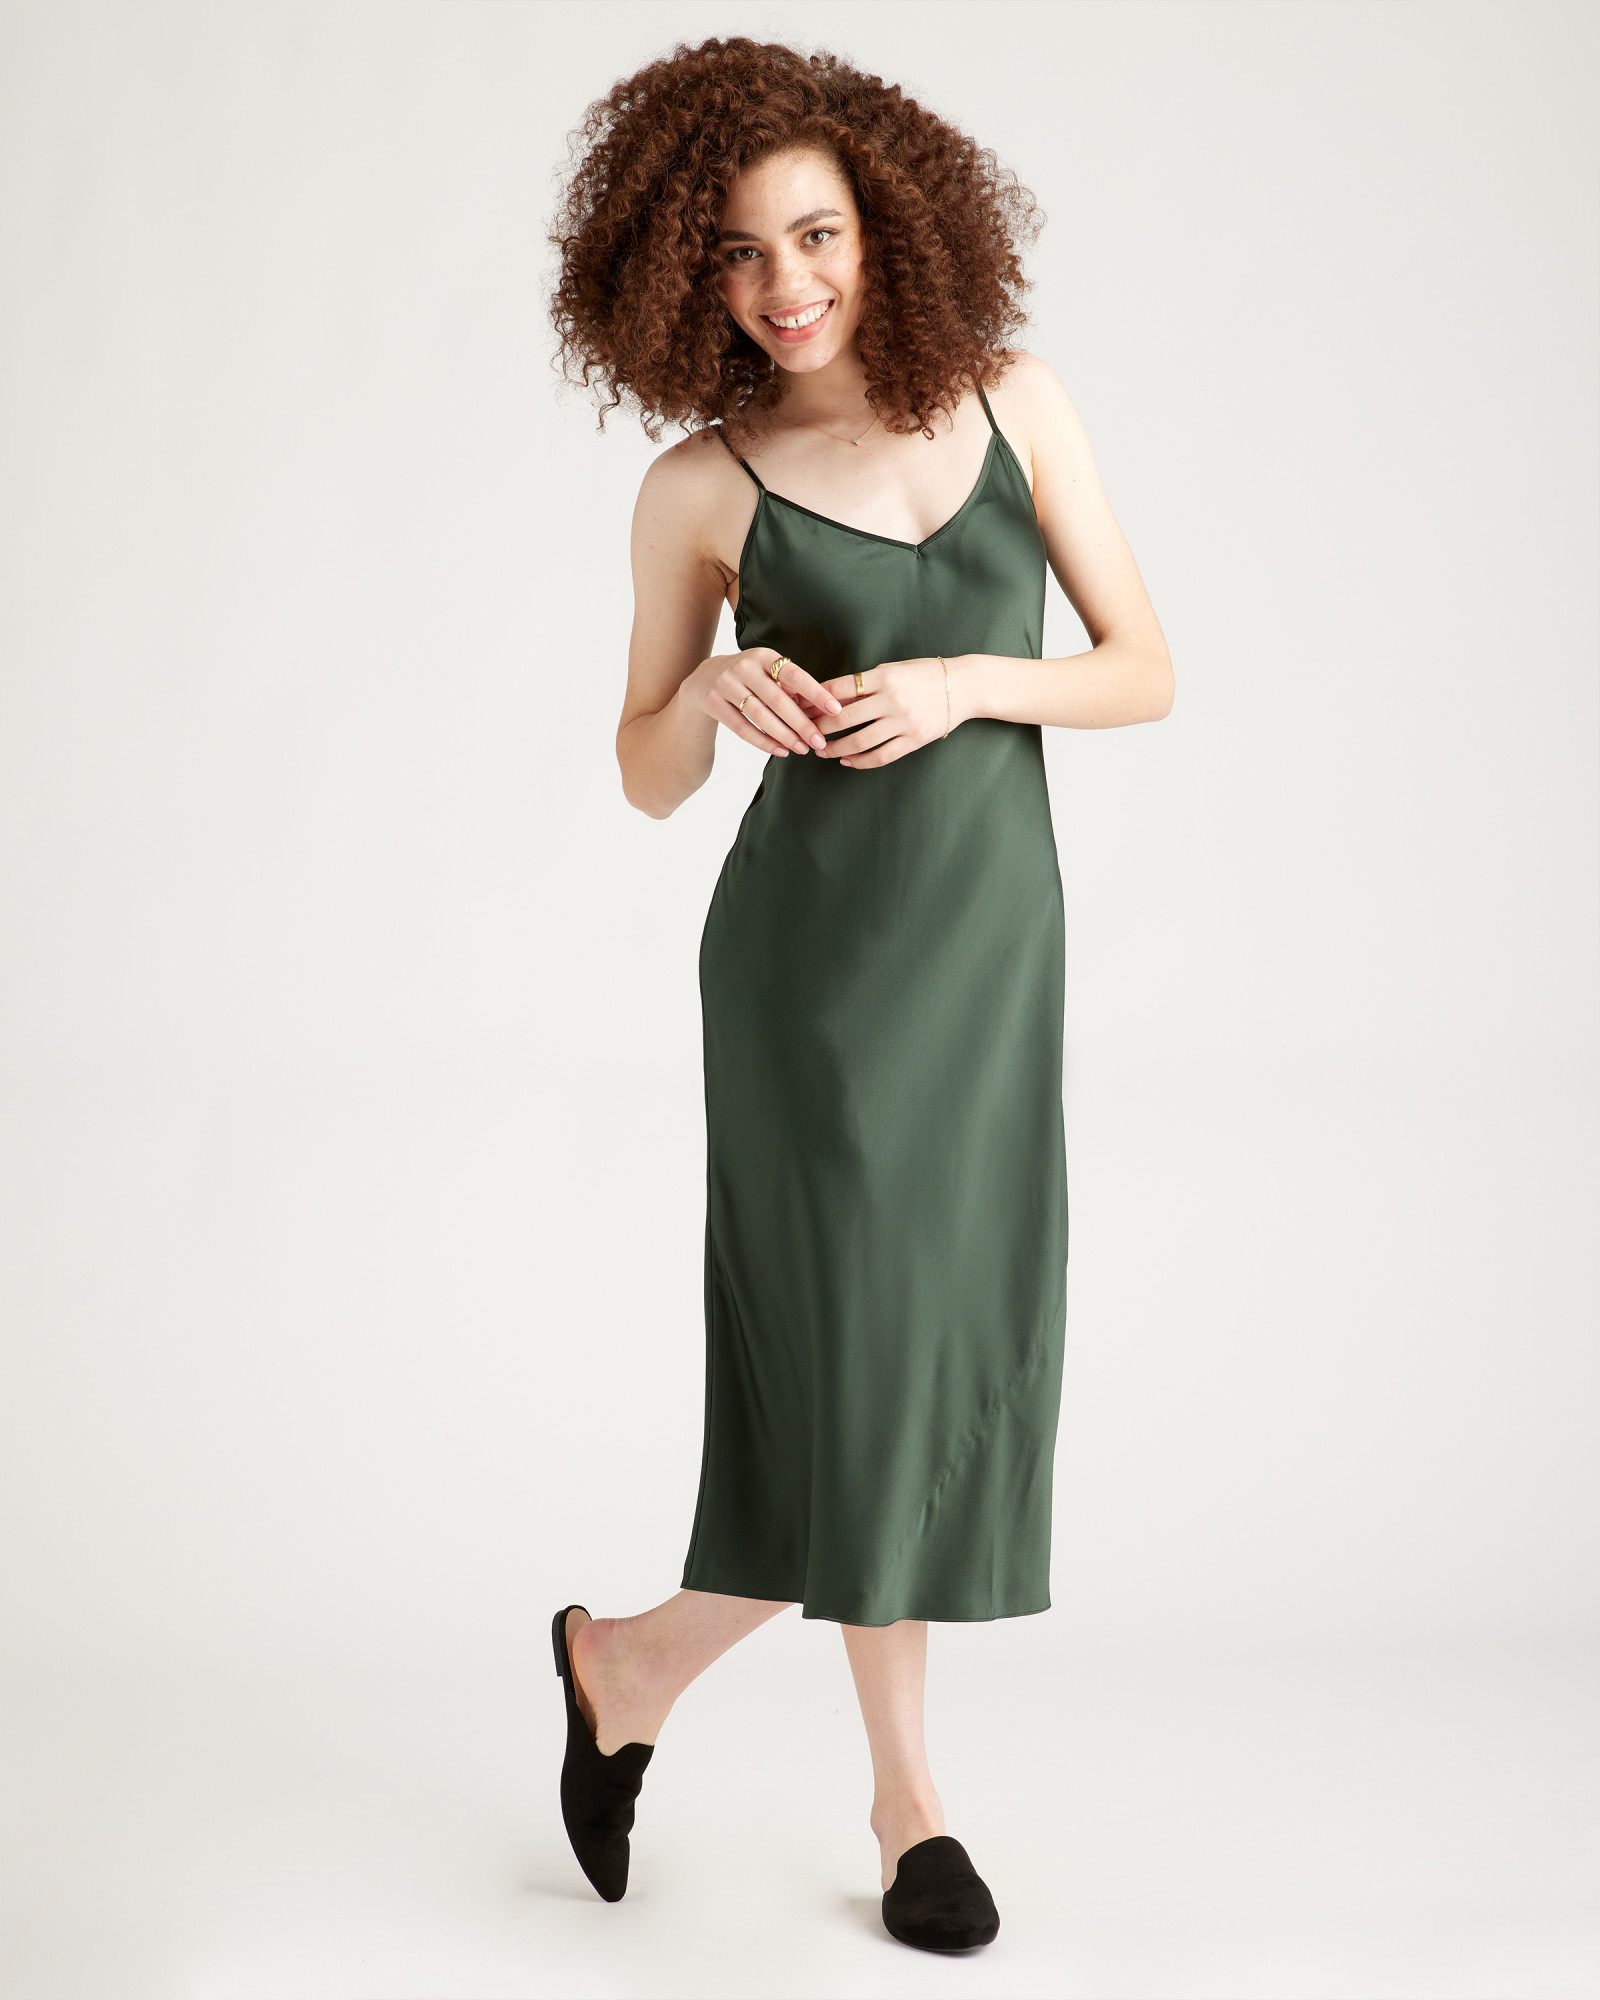 A model wears a forest green slip dress.